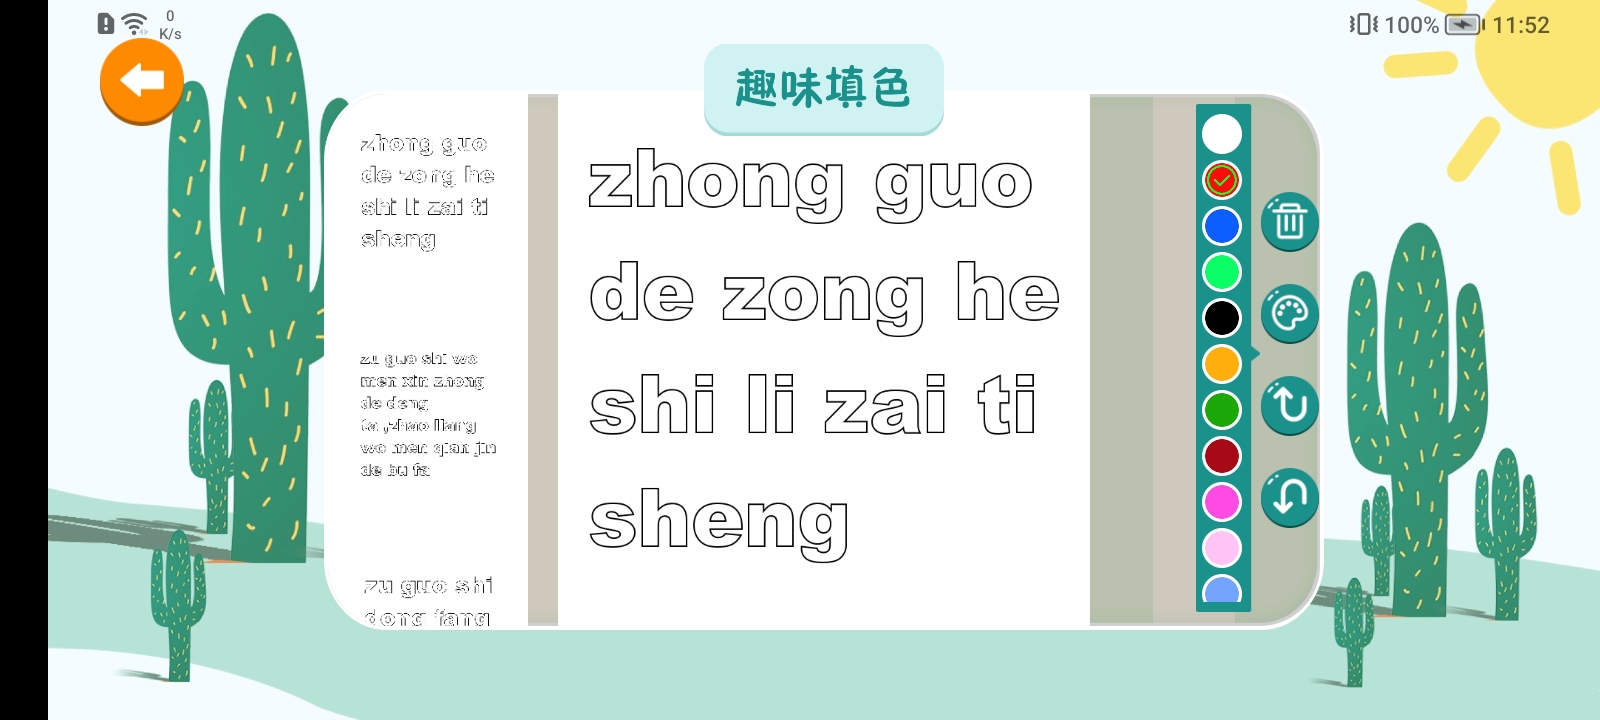 汉语拼音拼读软件 截图5